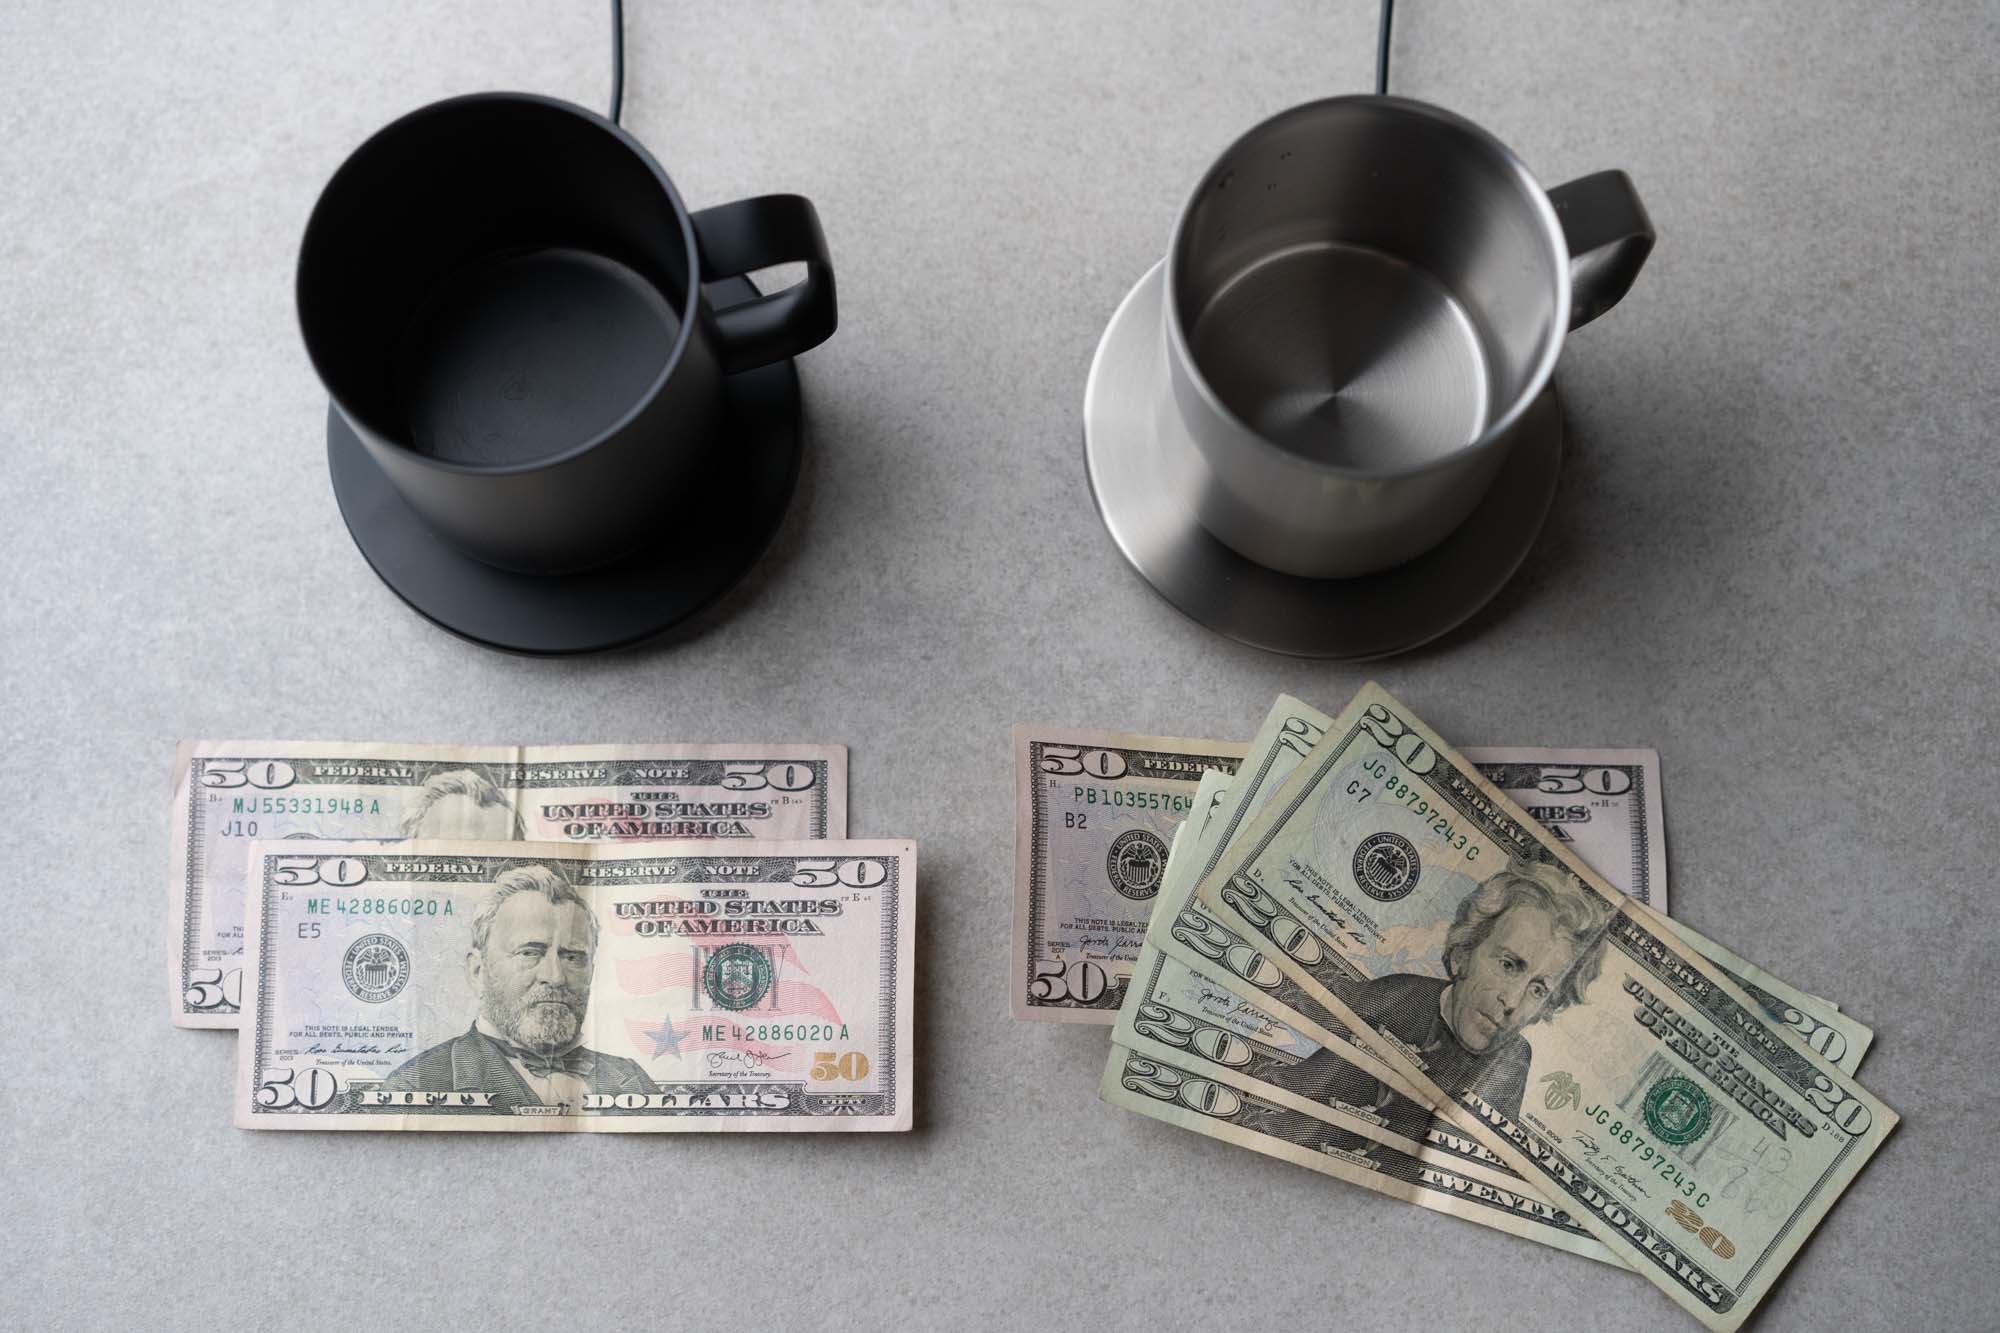 Ember Mug and cash